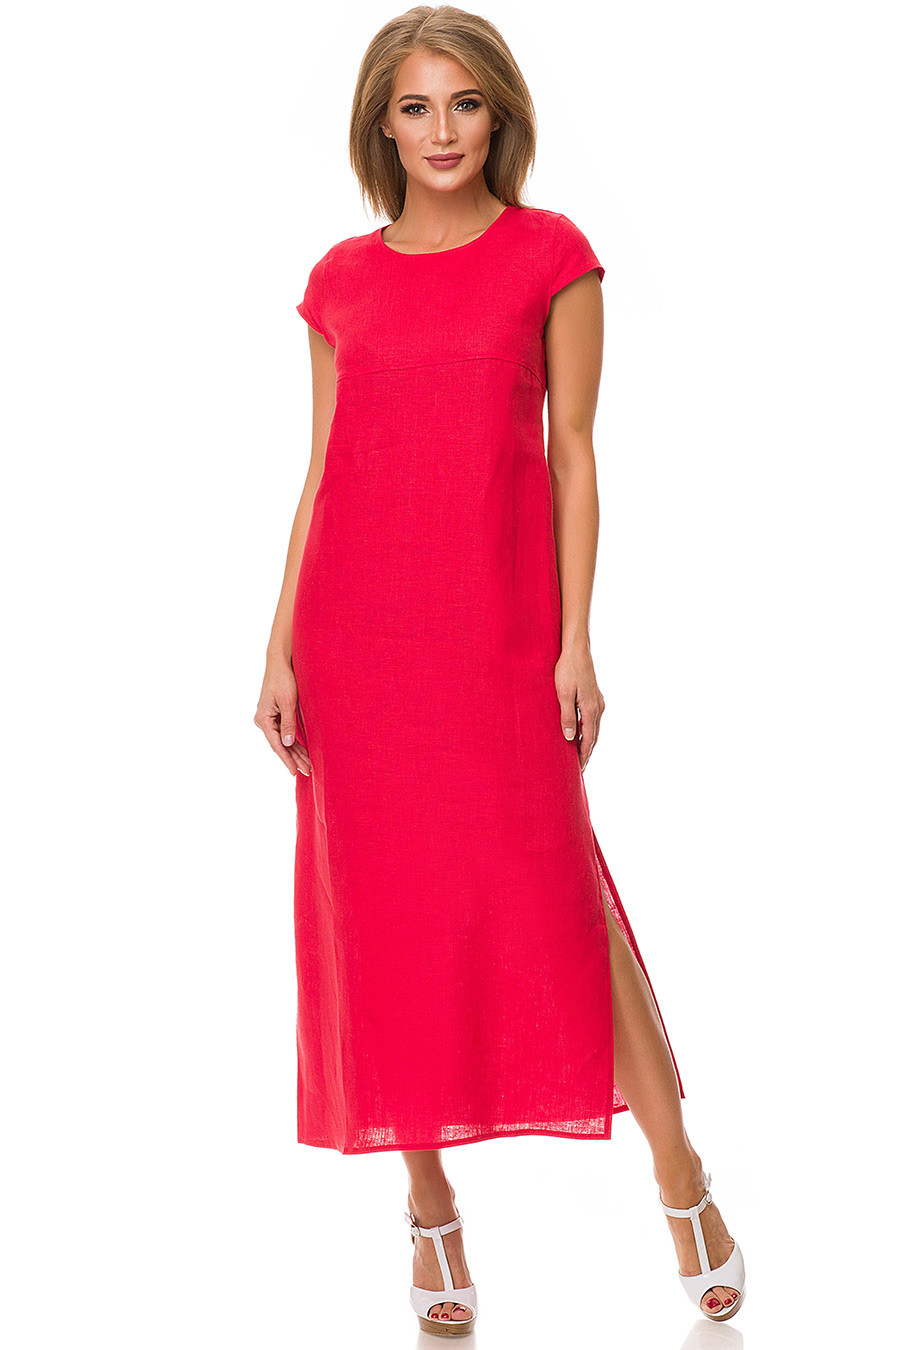 Красное платье лен. Платье Габриэла лен 5169-18. Красное льняное платье. Красное летнее платье. Платье лен длинное.